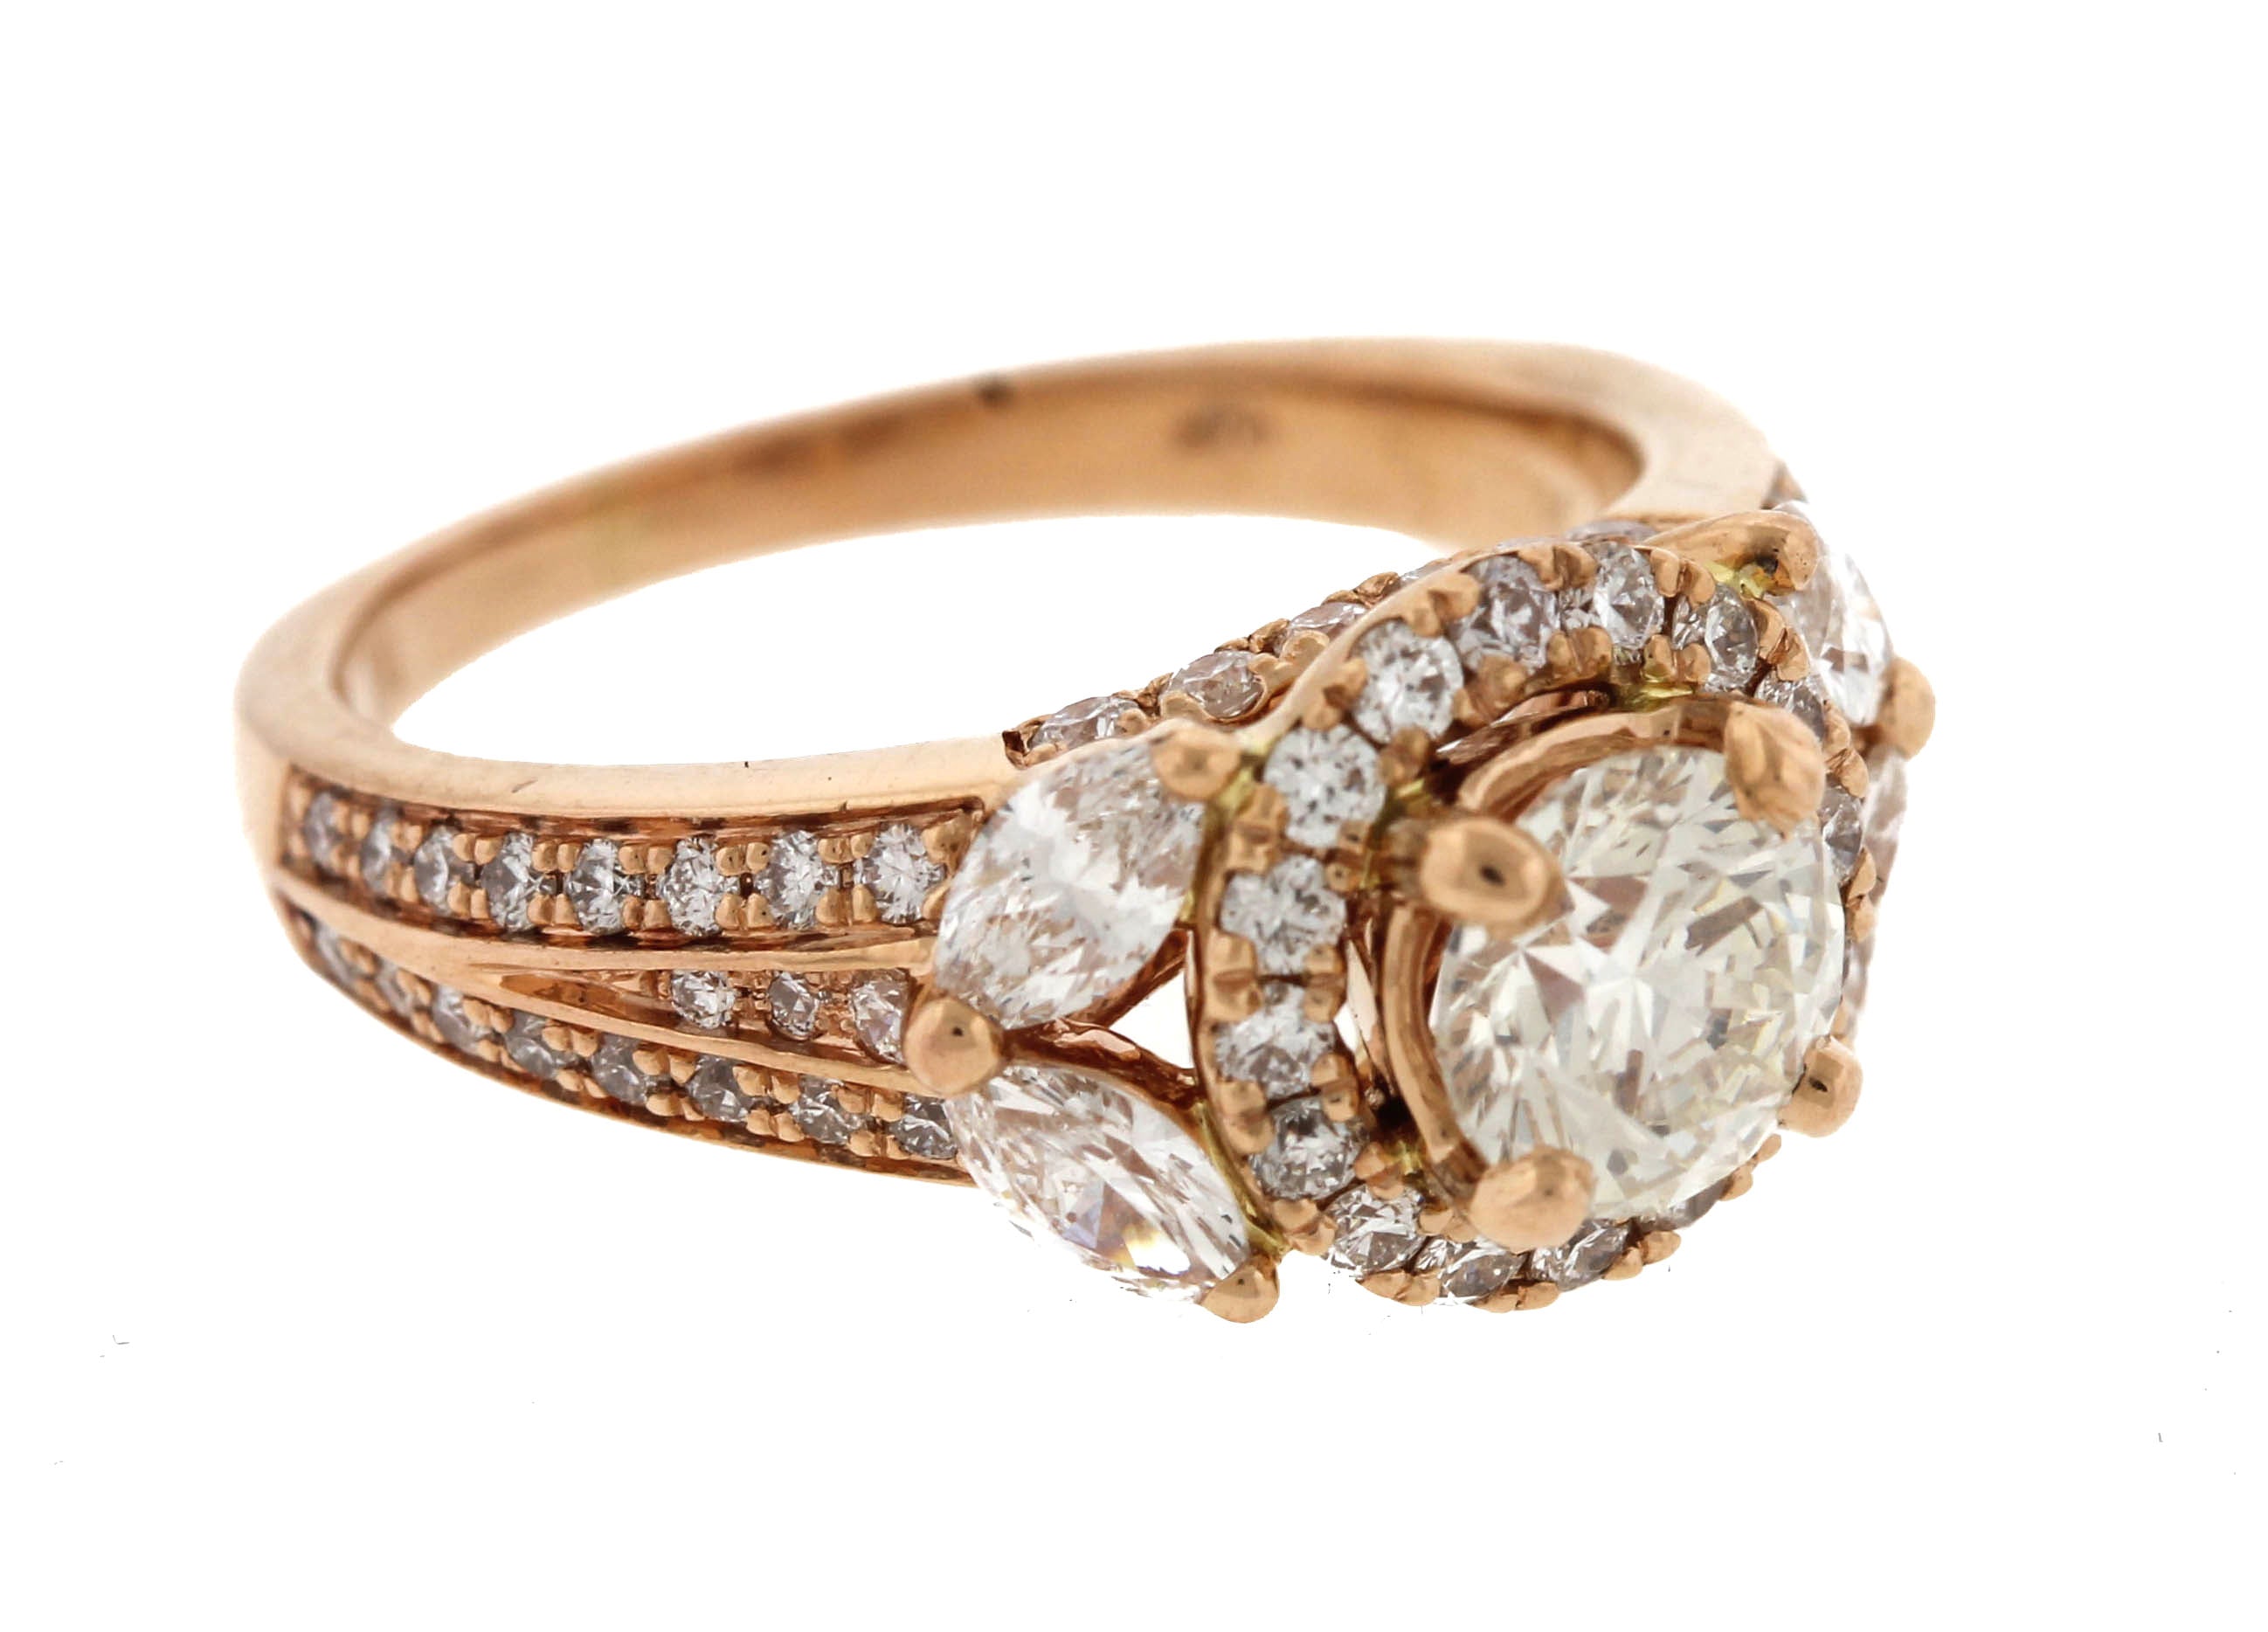 Stunning 18K Rose Gold 1.66ctw Diamond Engagement Ring GIA